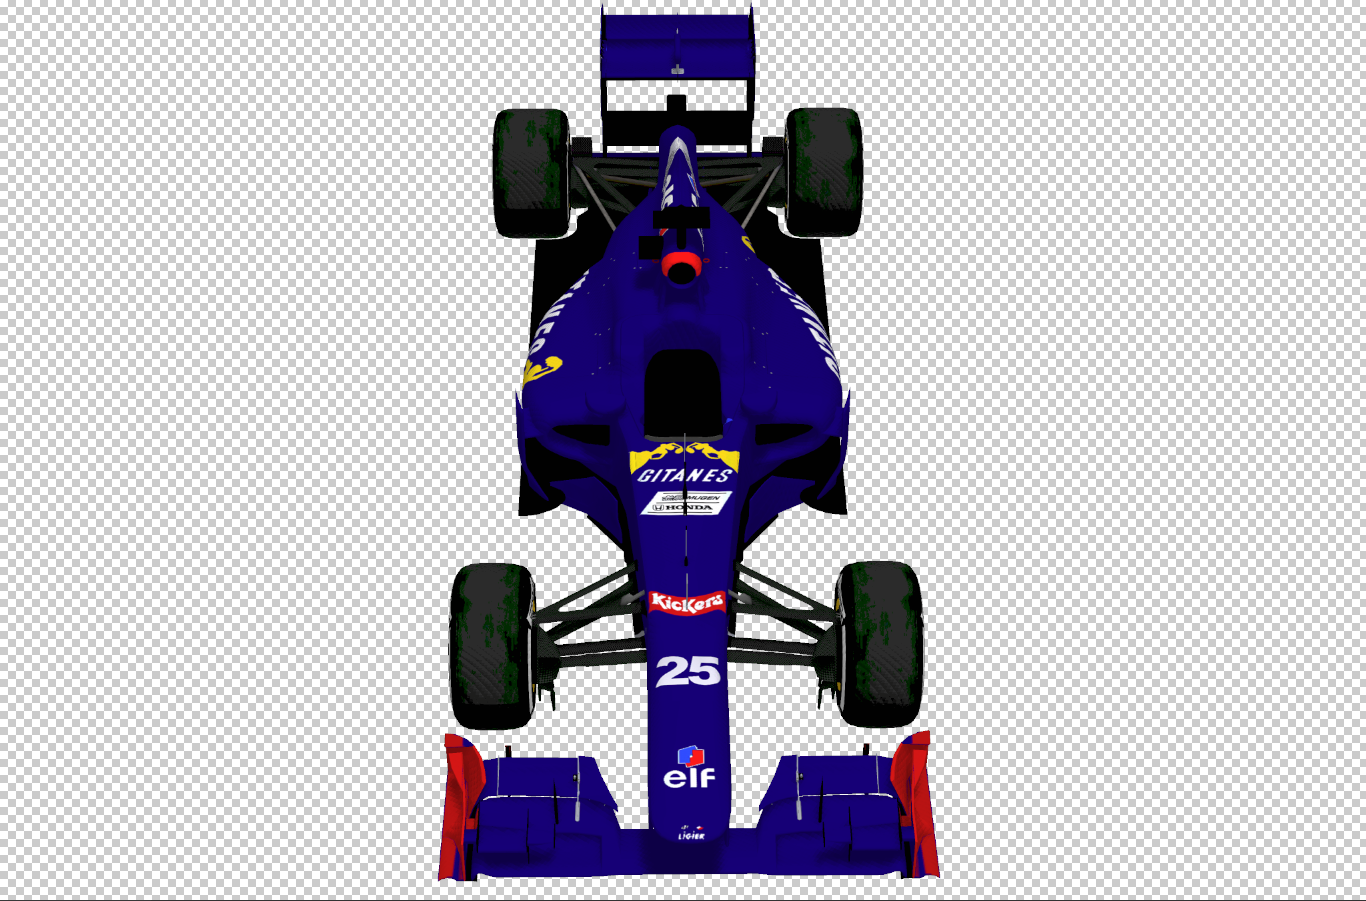 NFSG Finale Pack - 1995 Ligier Front.PNG